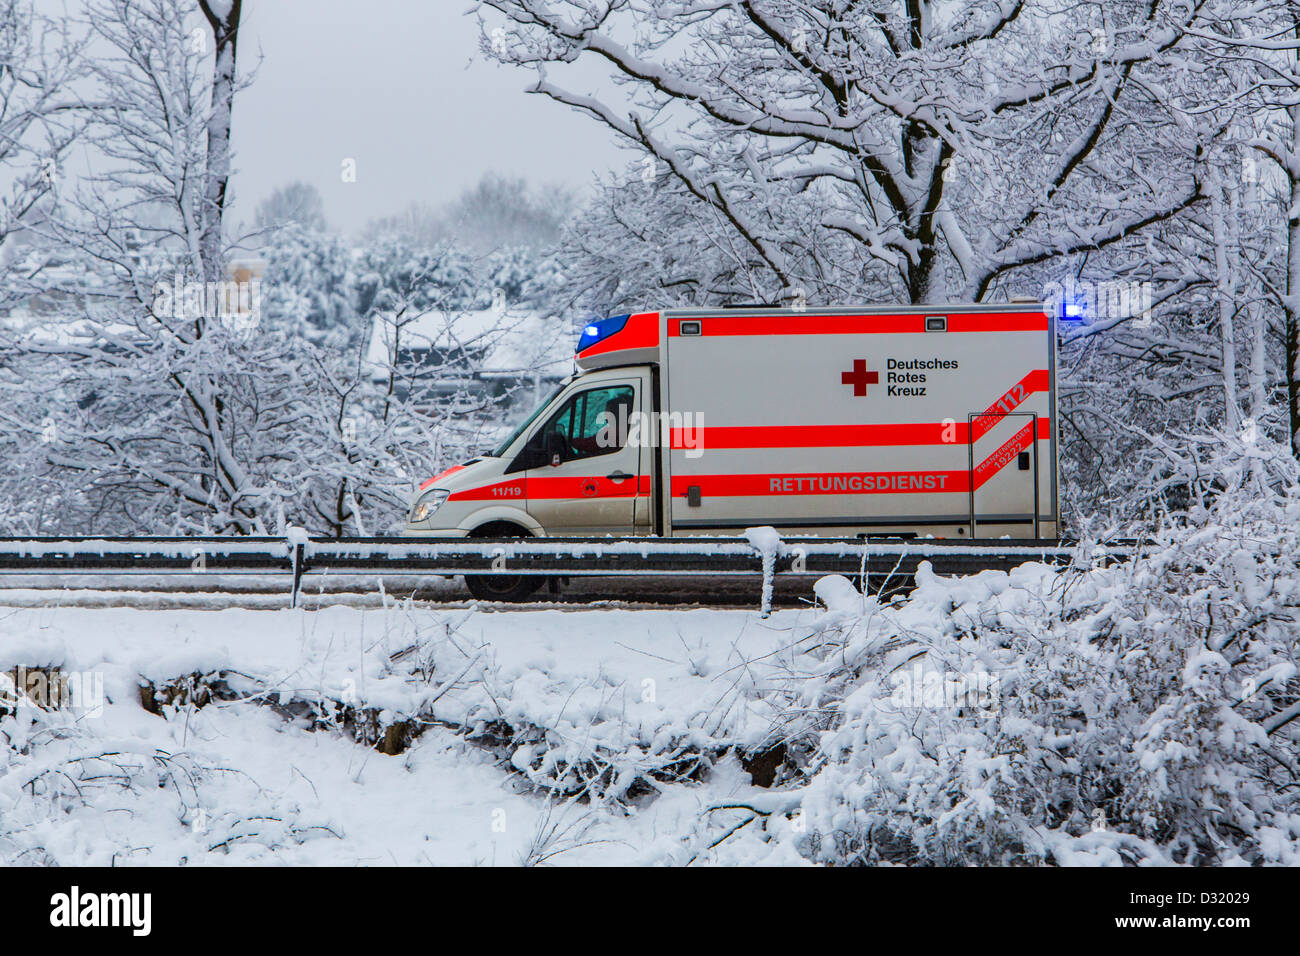 Ambulanza della Croce Rossa tedesca. In un funzionamento di emergenza, con luci lampeggianti, su una strada innevata in inverno Foto Stock